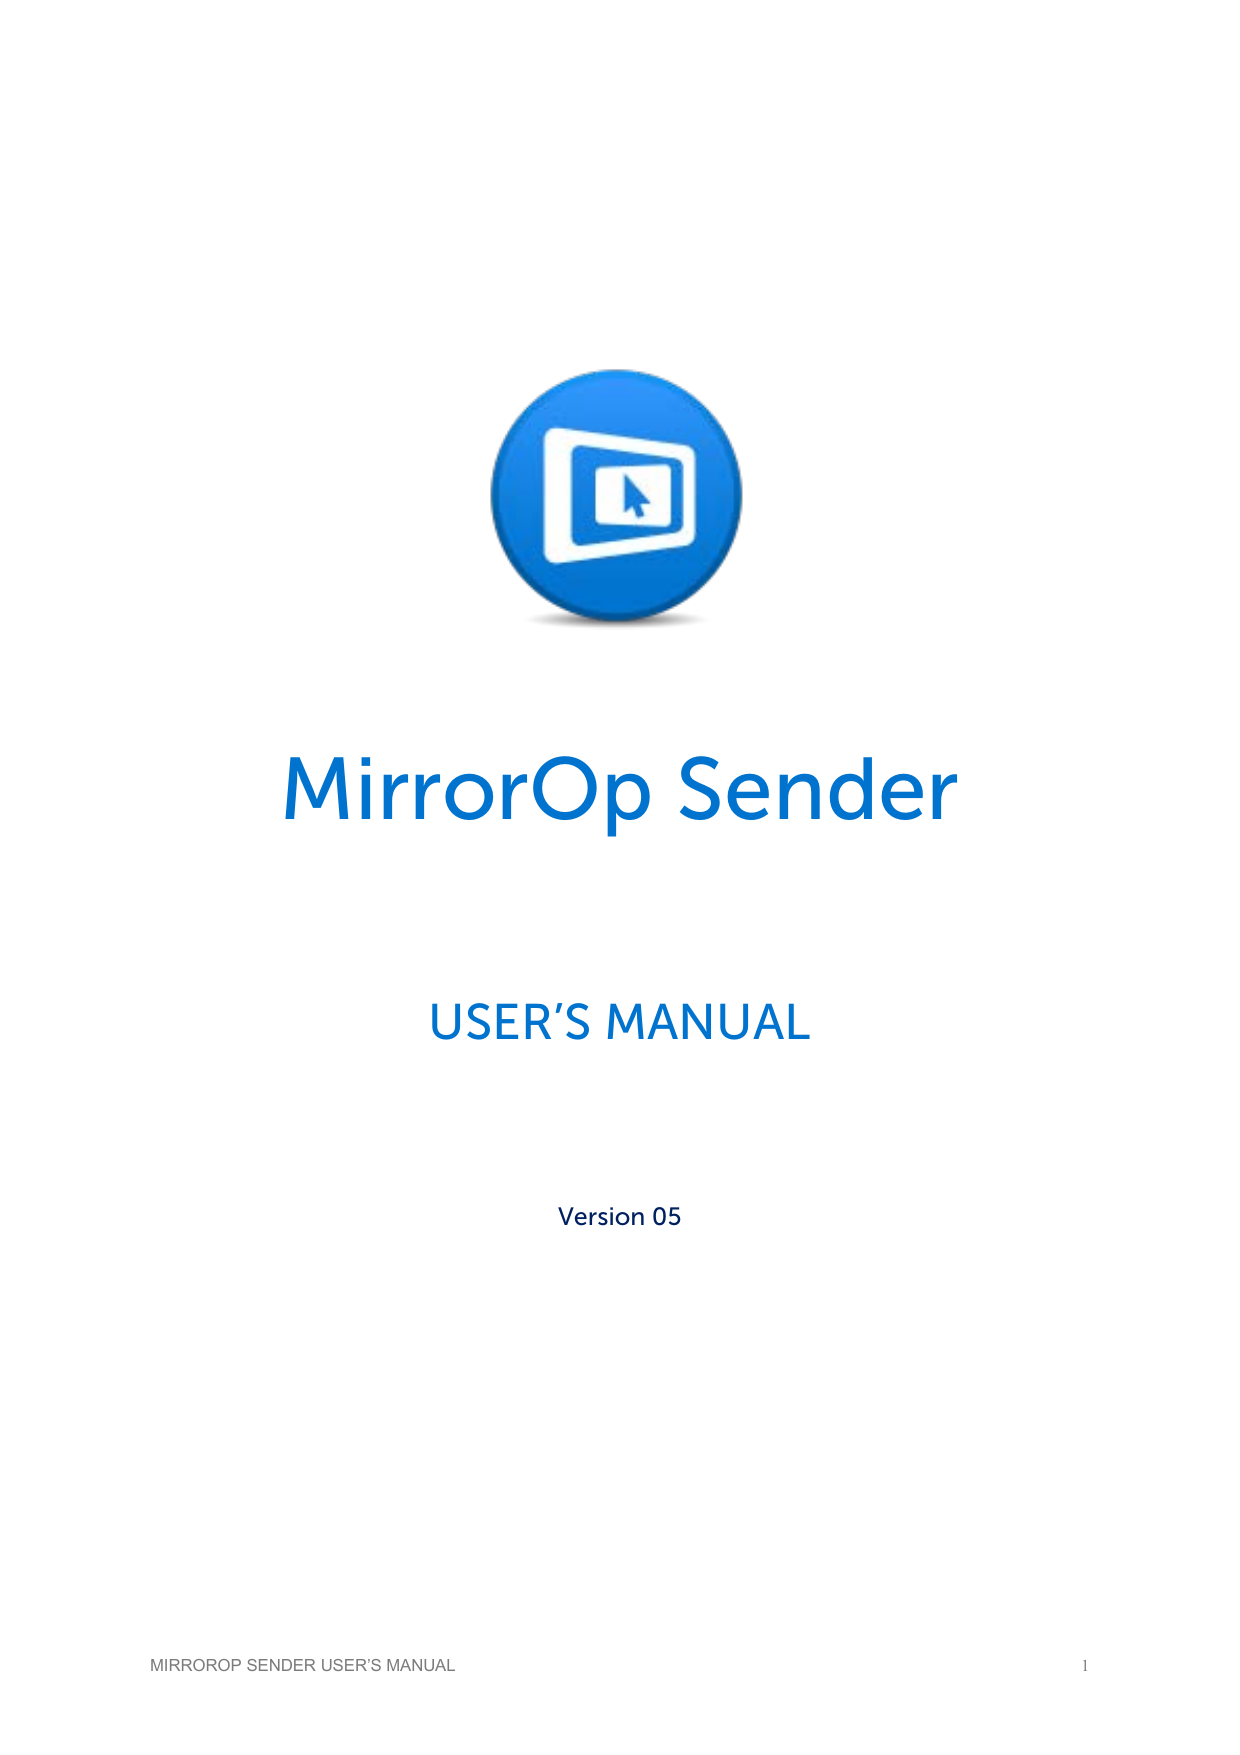 mirrorop sender registration key